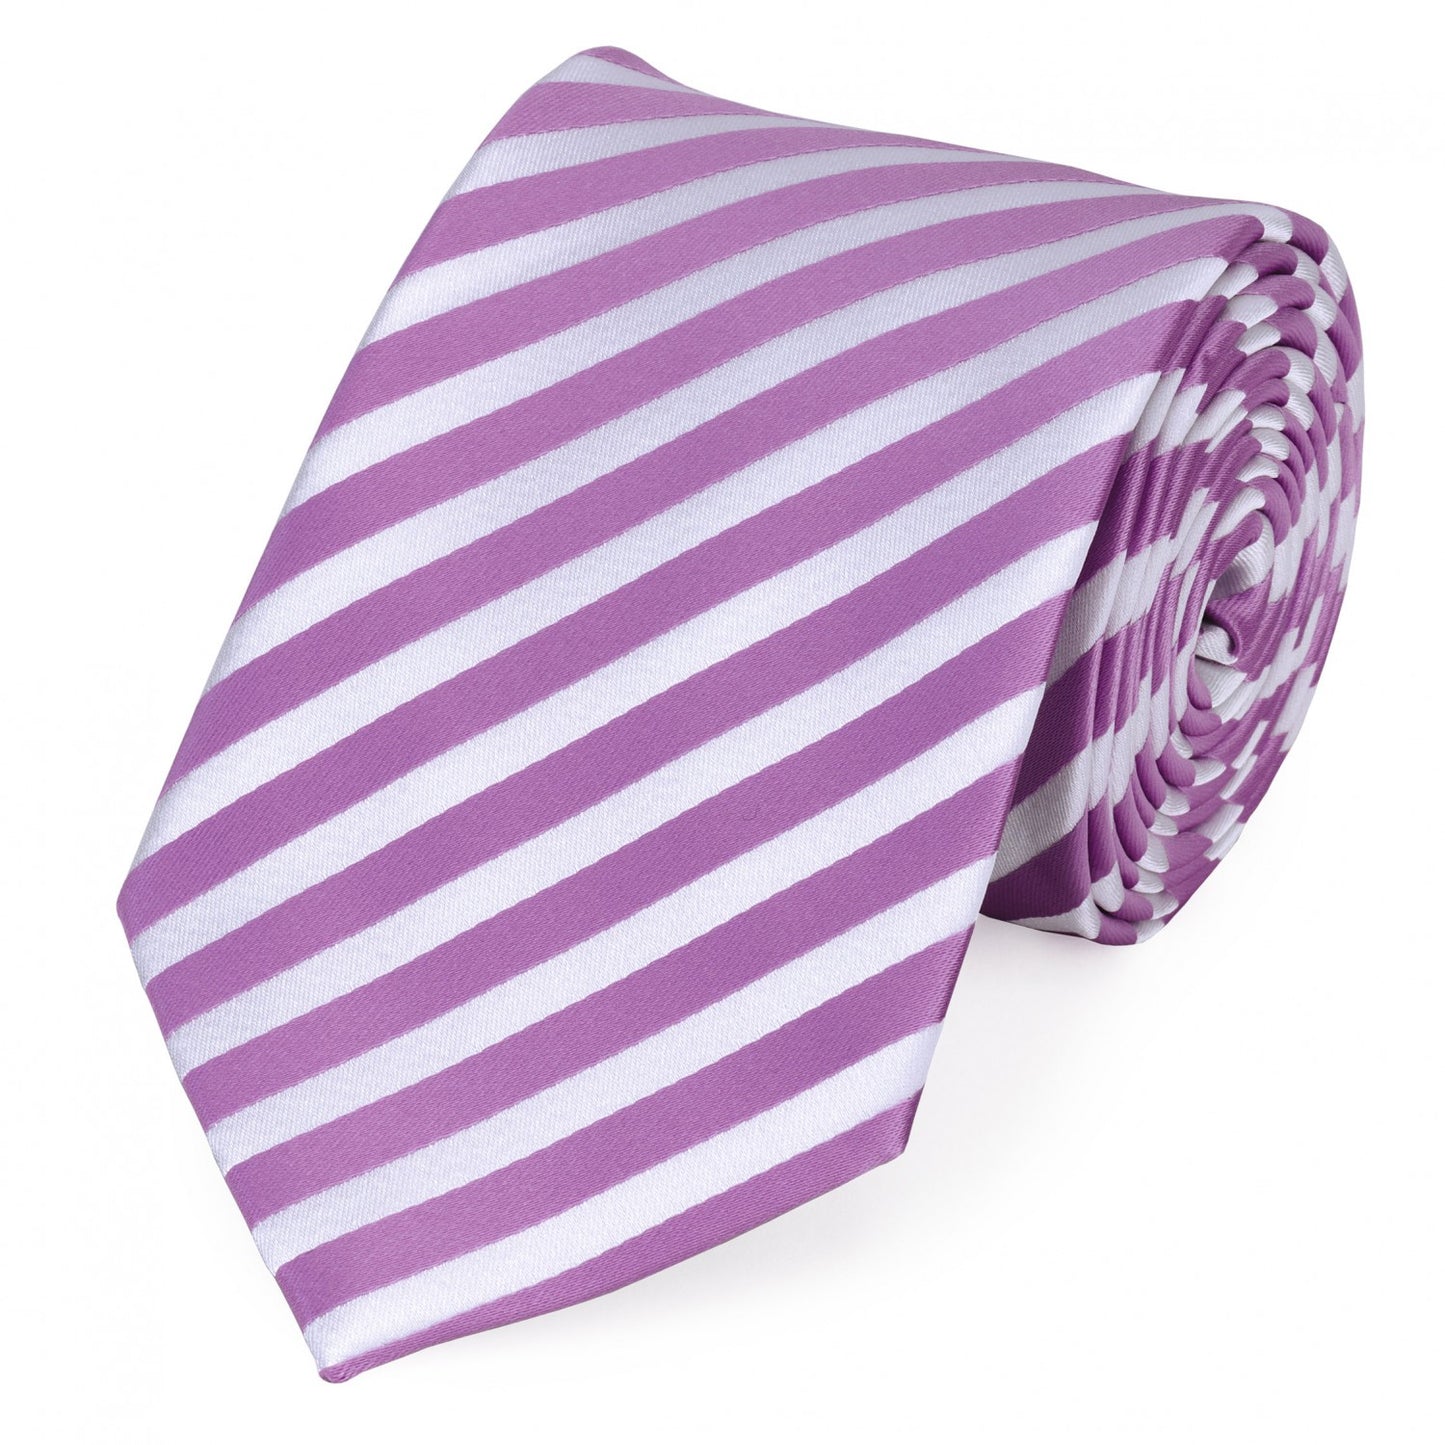 Fabio Farini - Krawatten verschiedene Farben in 8cm